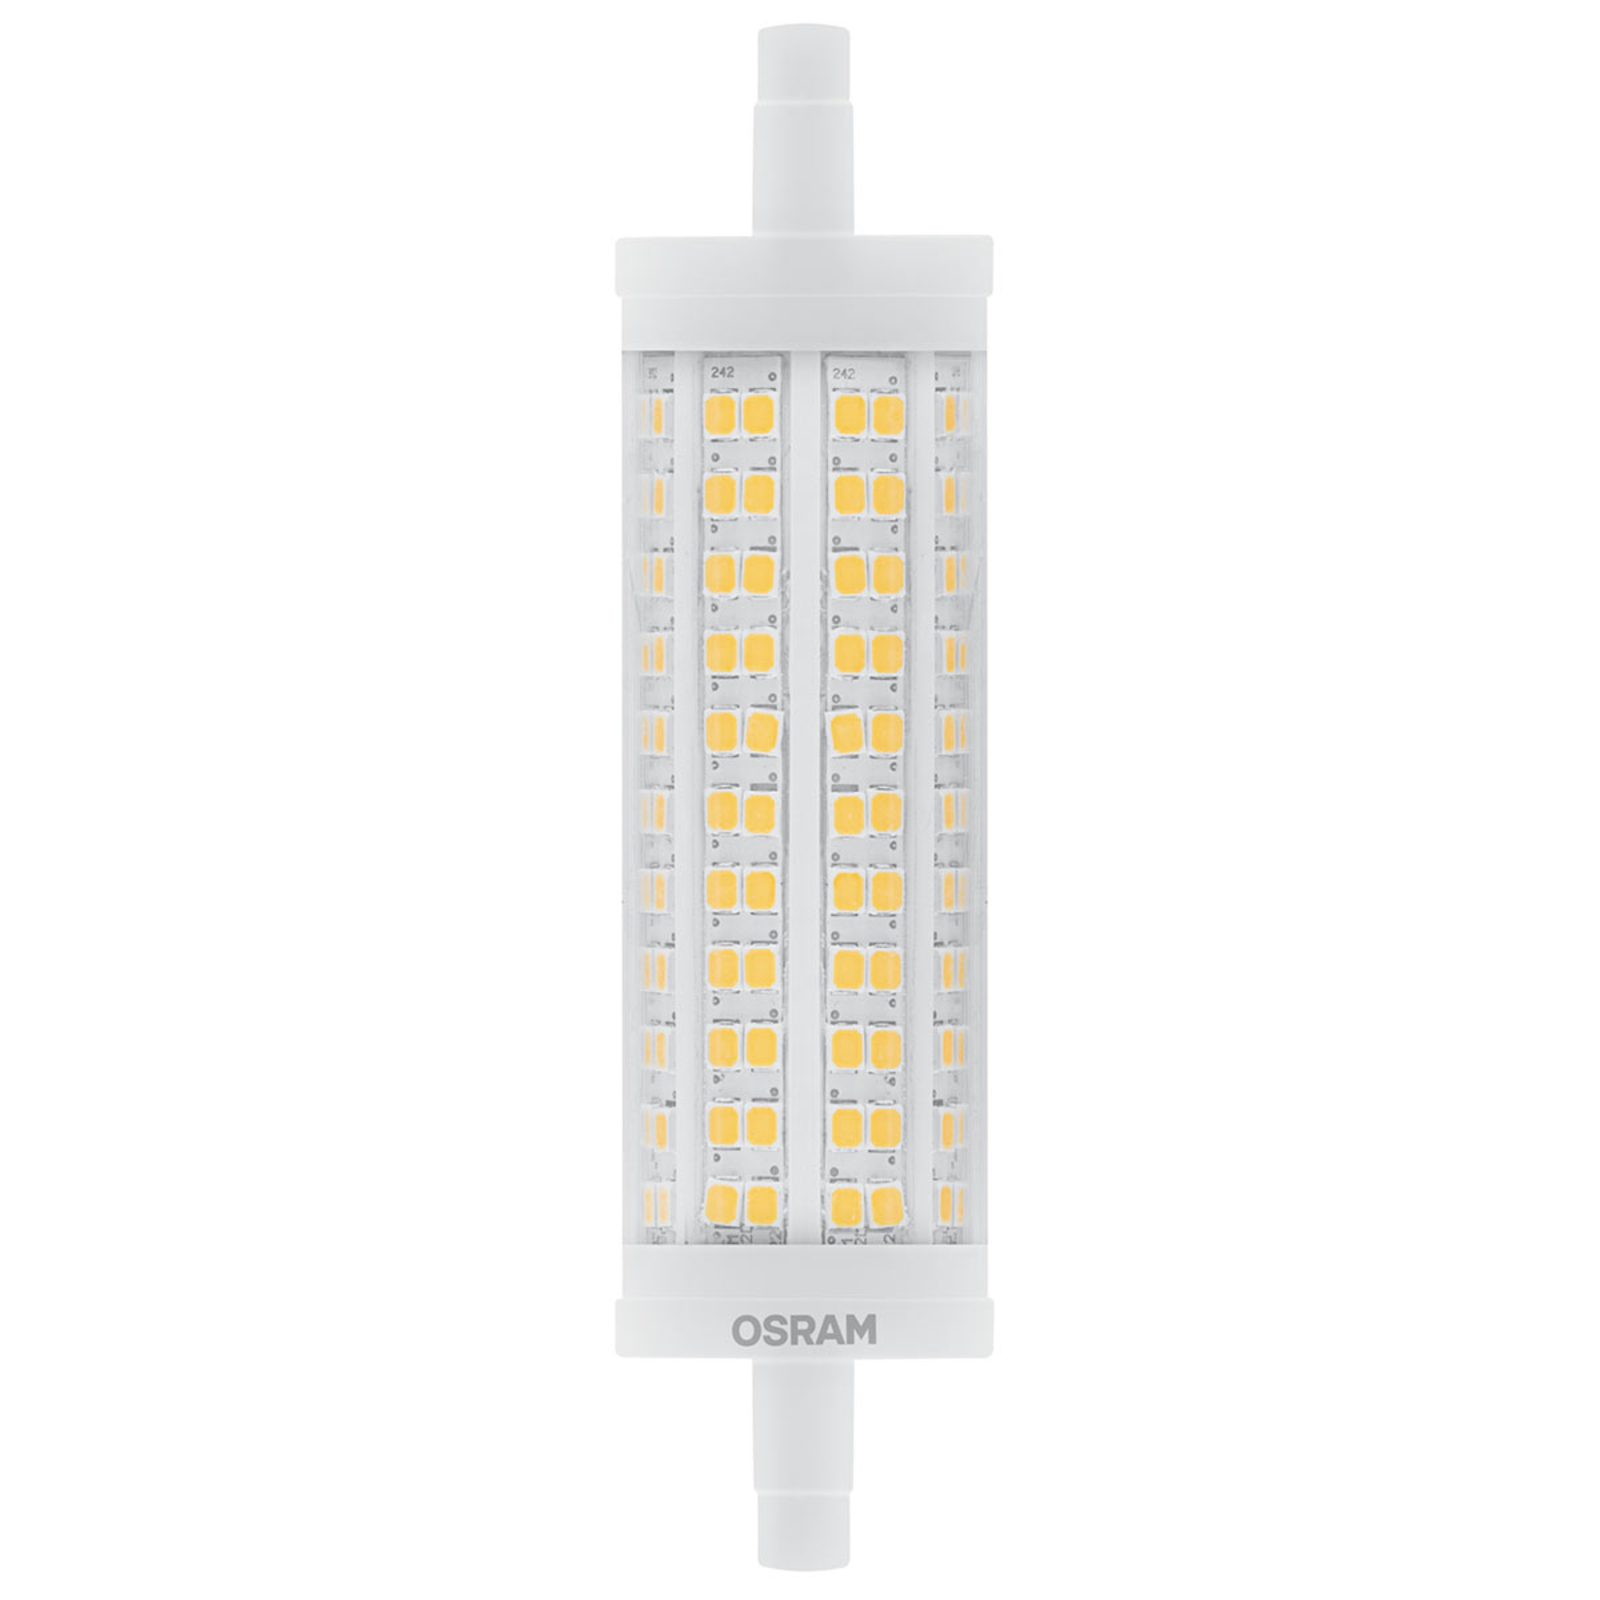 OSRAM LED-Stablampe R7s 19W warmweiß, 2.452 lm